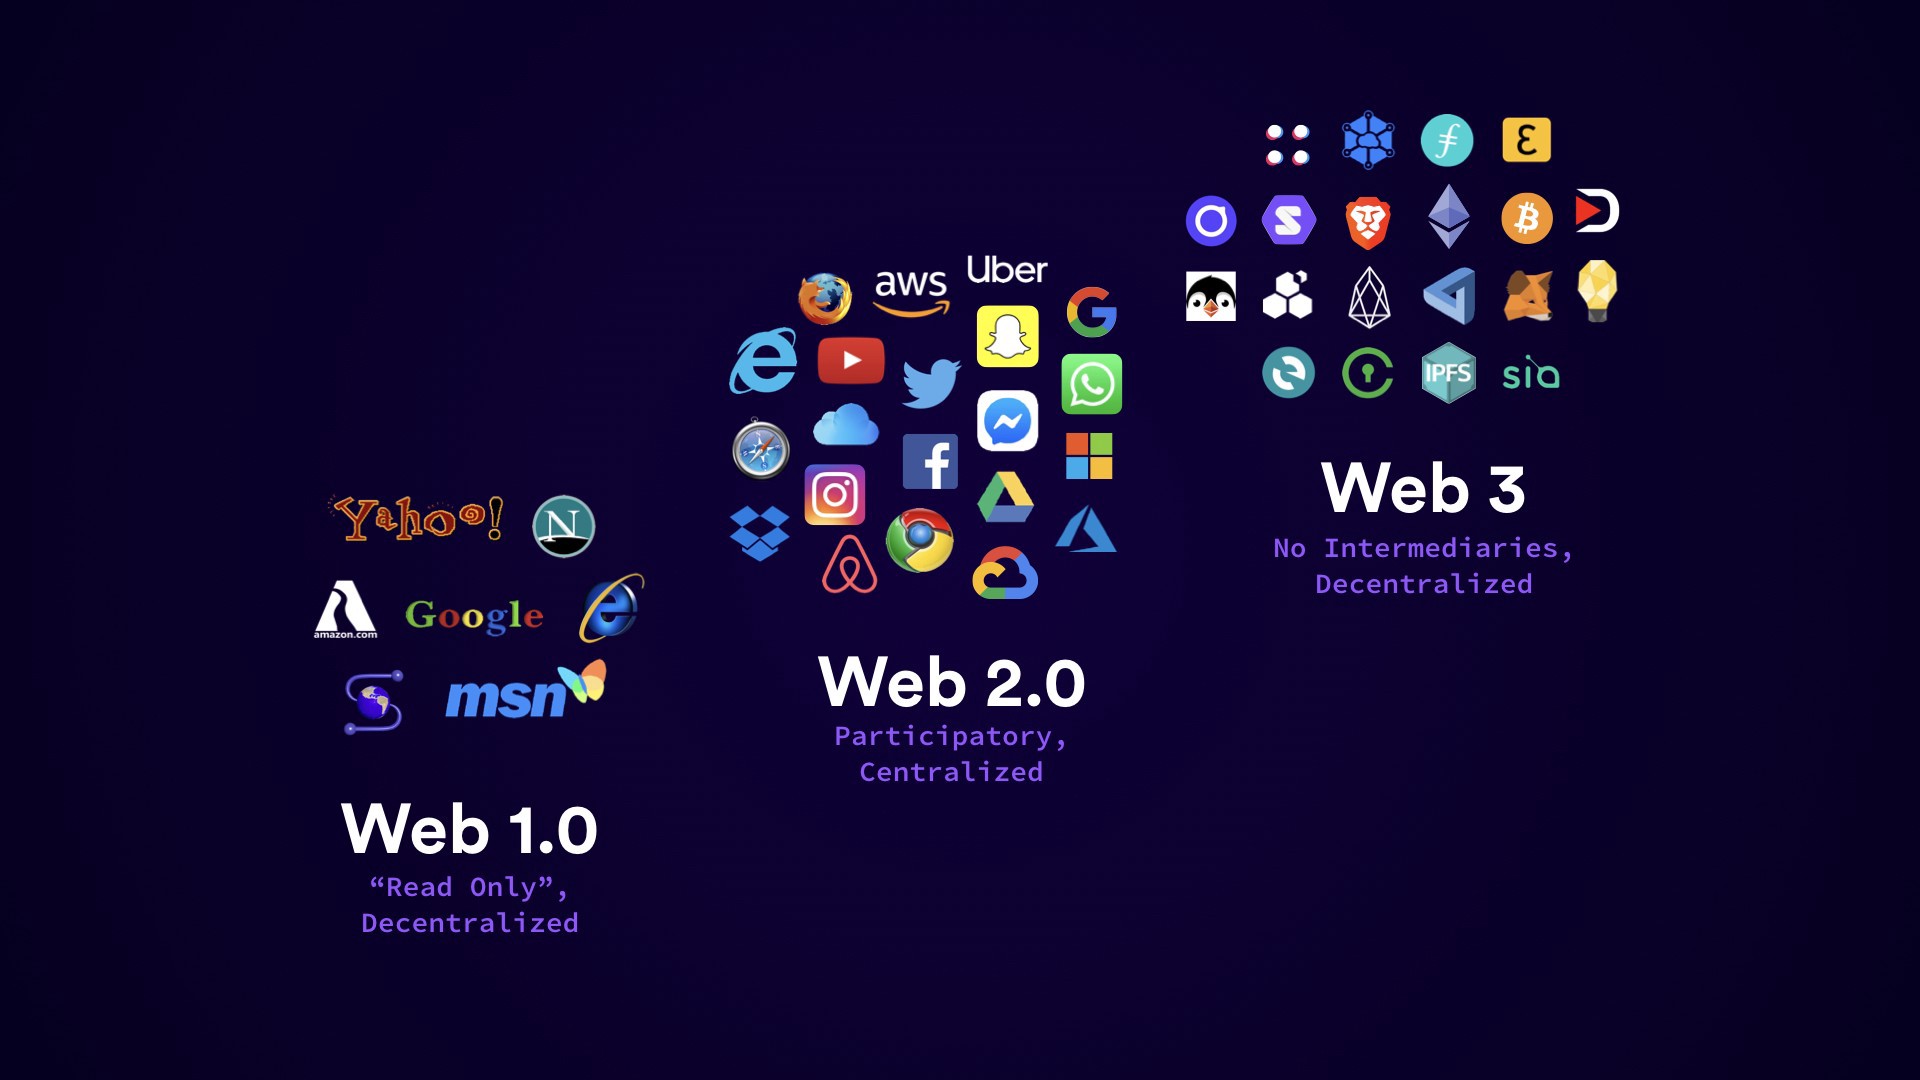 这张图片展示了Web 1.0、Web 2.0和Web 3.0的演变，通过标志性的互联网公司图标来代表不同的网络发展阶段。